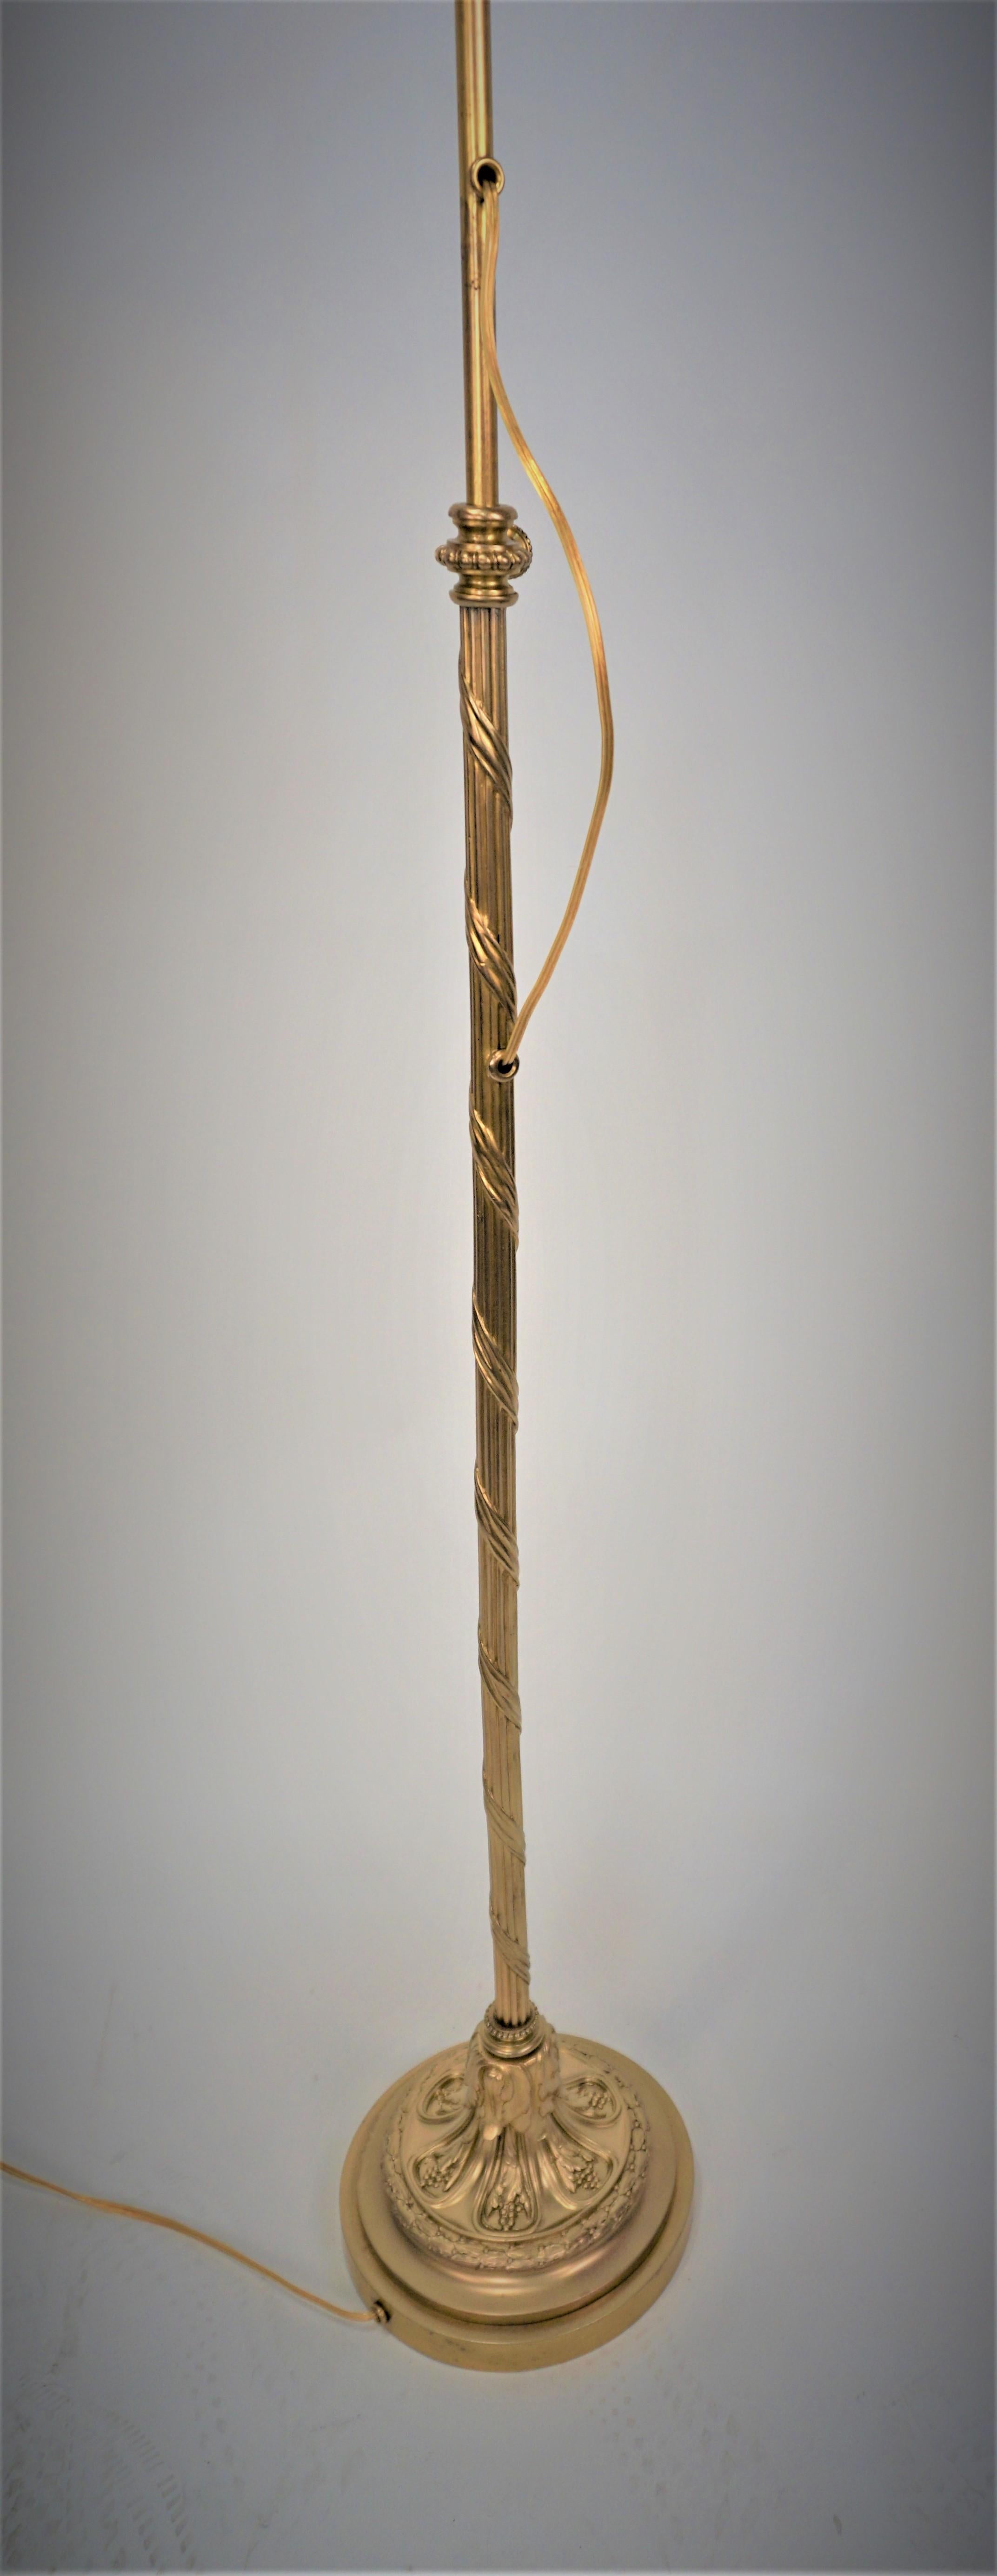 Laiton Lampadaire réglable américain des années 1920 en bronze/laiton